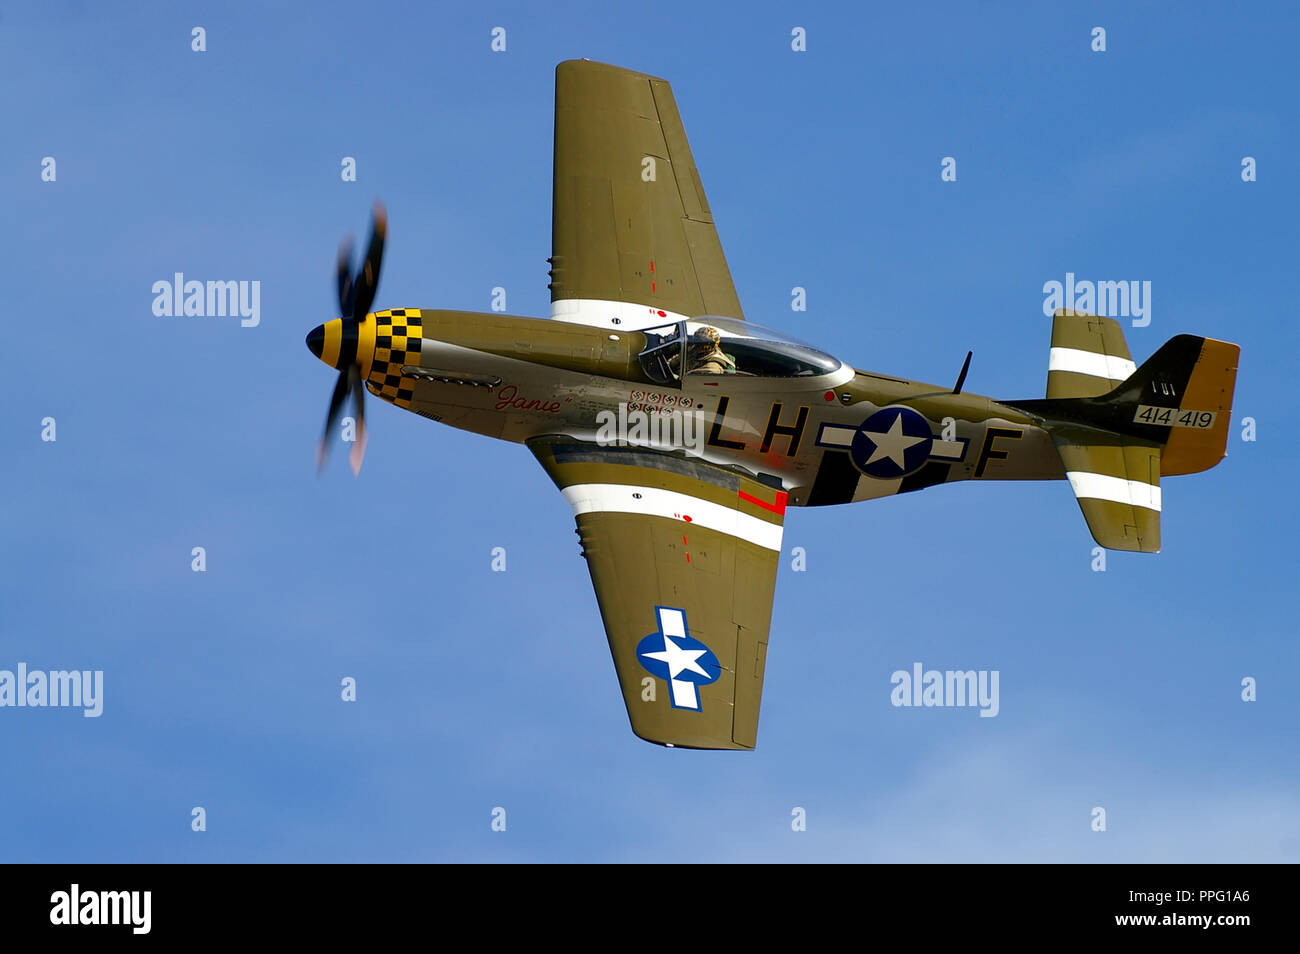 Avion de chasse nord-américain P-51 Mustang nommé Janie restauré et piloté par Maurice Hammond. Avion de l'US Air Force. Voler dans le ciel bleu Banque D'Images